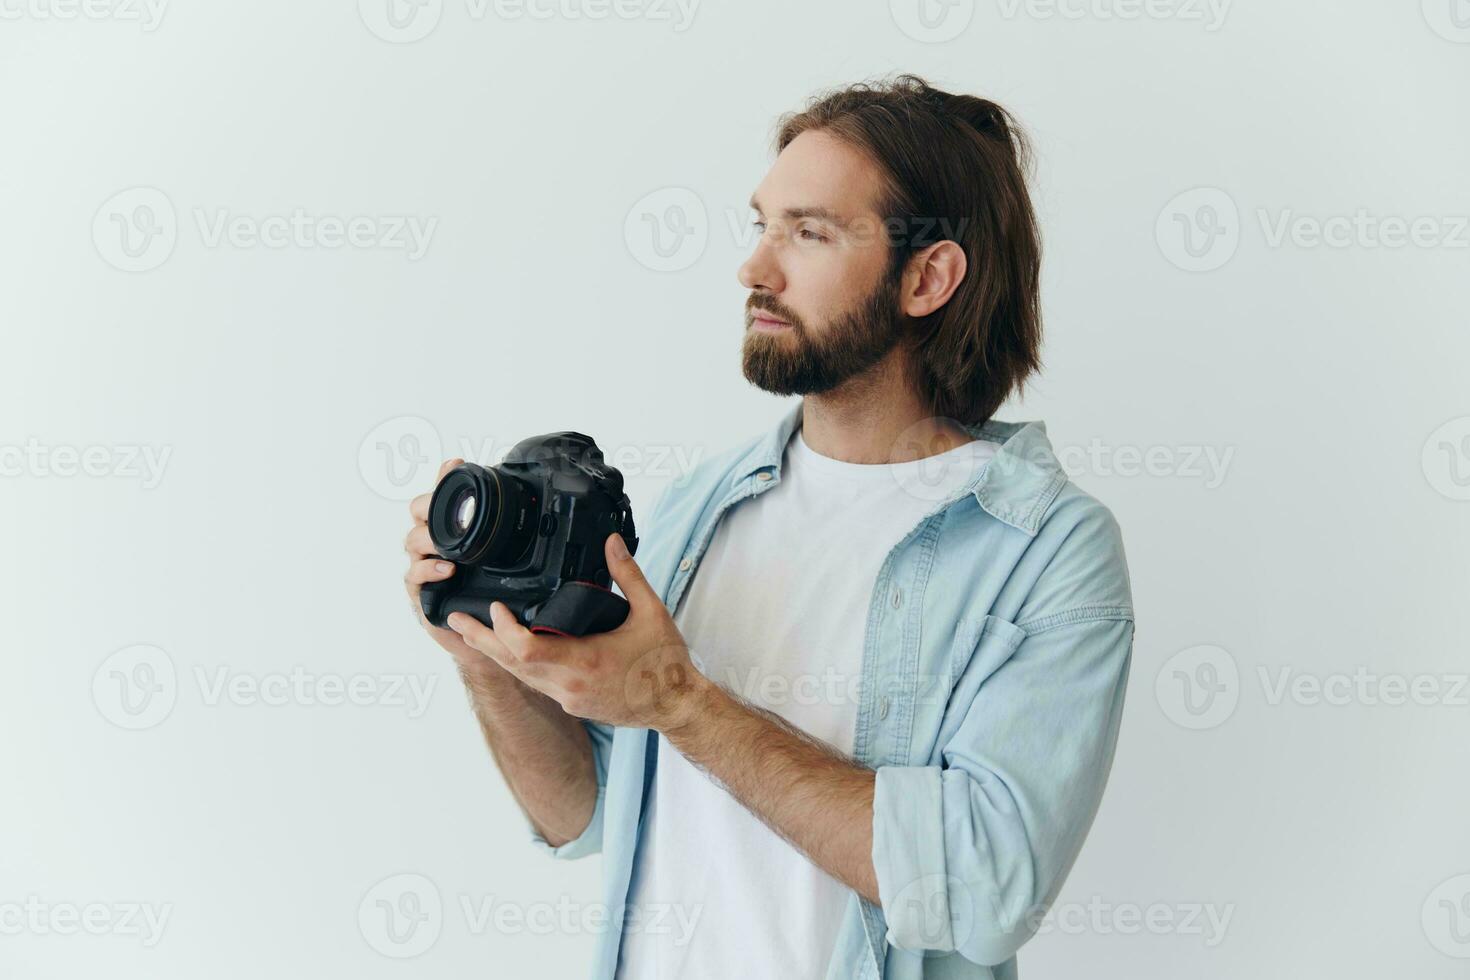 un masculino hipster fotógrafo en un estudio en contra un blanco antecedentes mira mediante el cámara visor y dispara disparos con natural ligero desde el ventana. estilo de vida trabajo como un Lanza libre fotógrafo foto